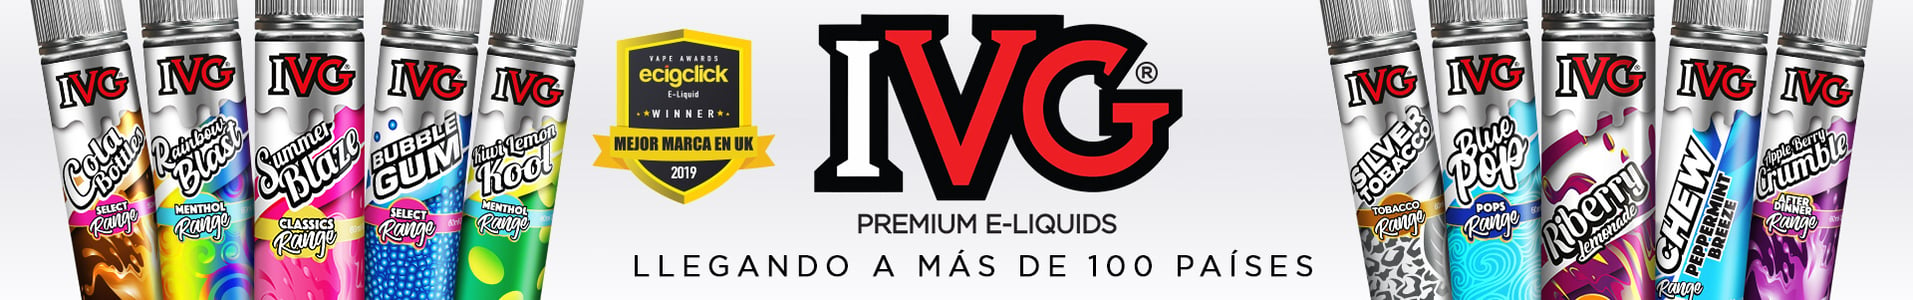 Coco 10ml Proporción 50PG/50VG Frutal Sabor Piña colada Sales de nicotina IVG